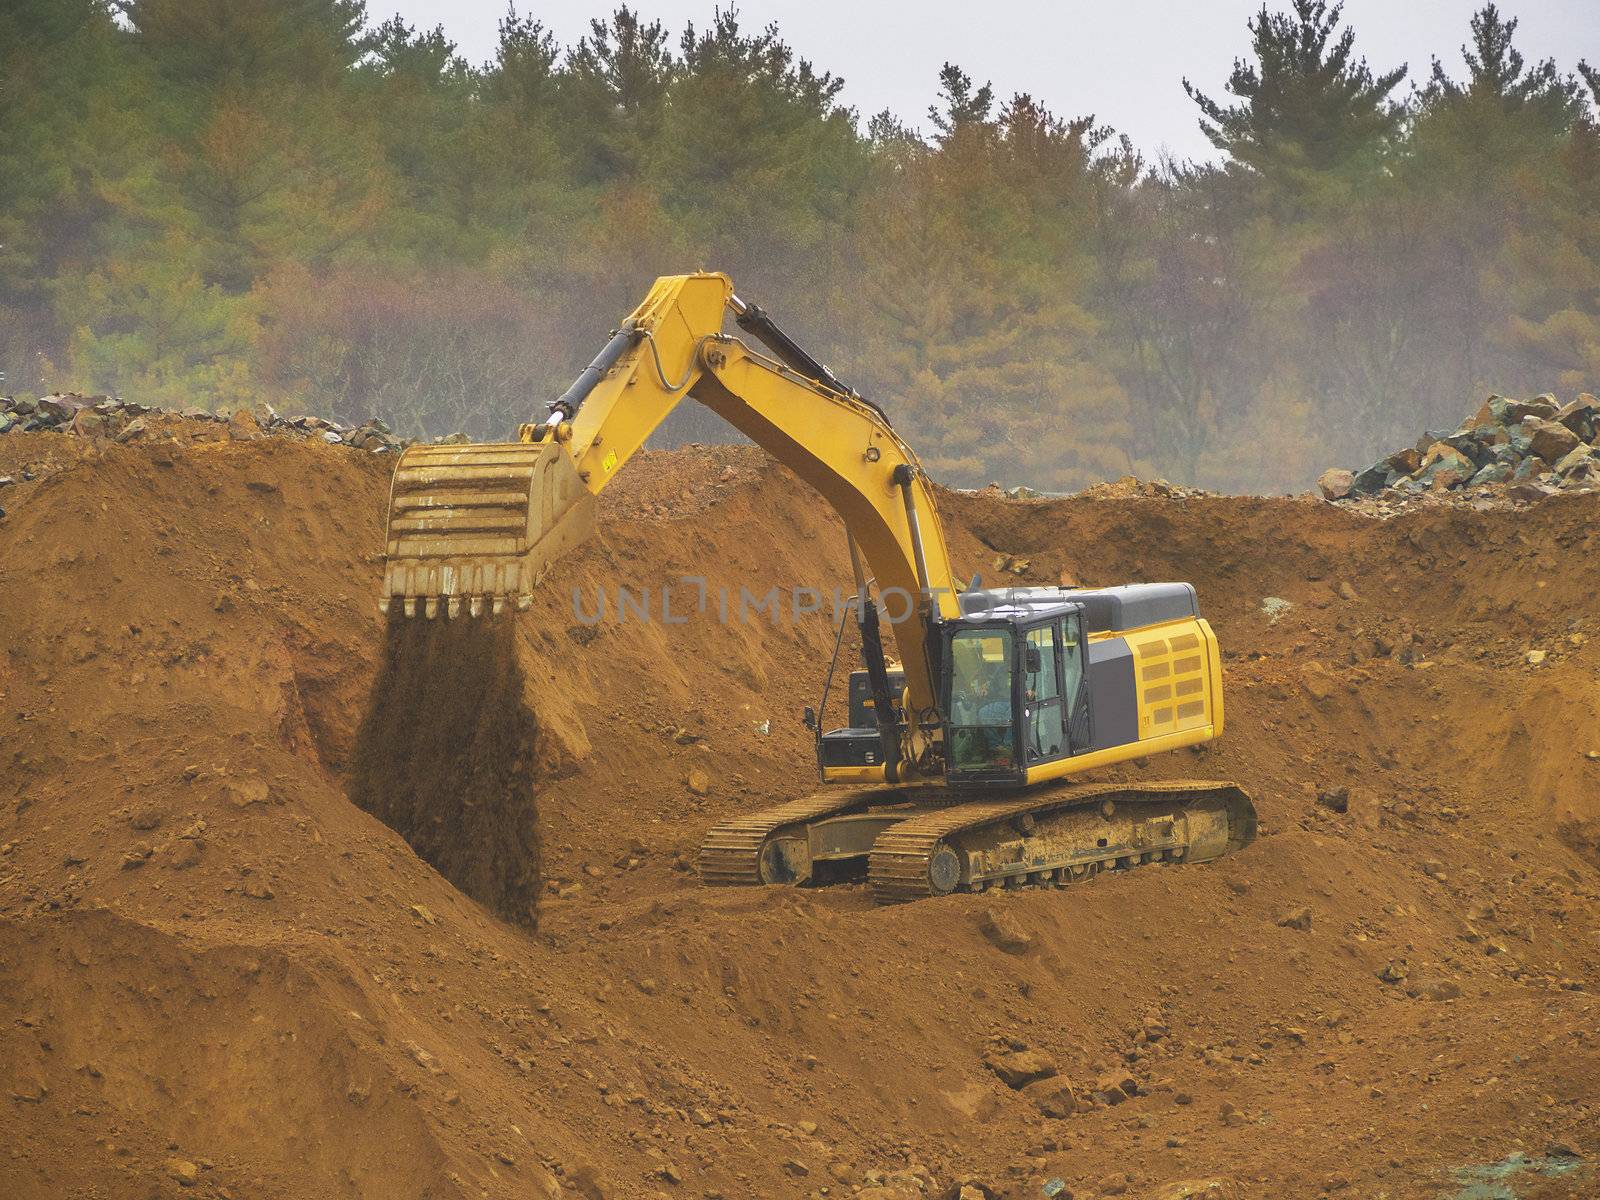 Excavator shovel digging in a gravel pit